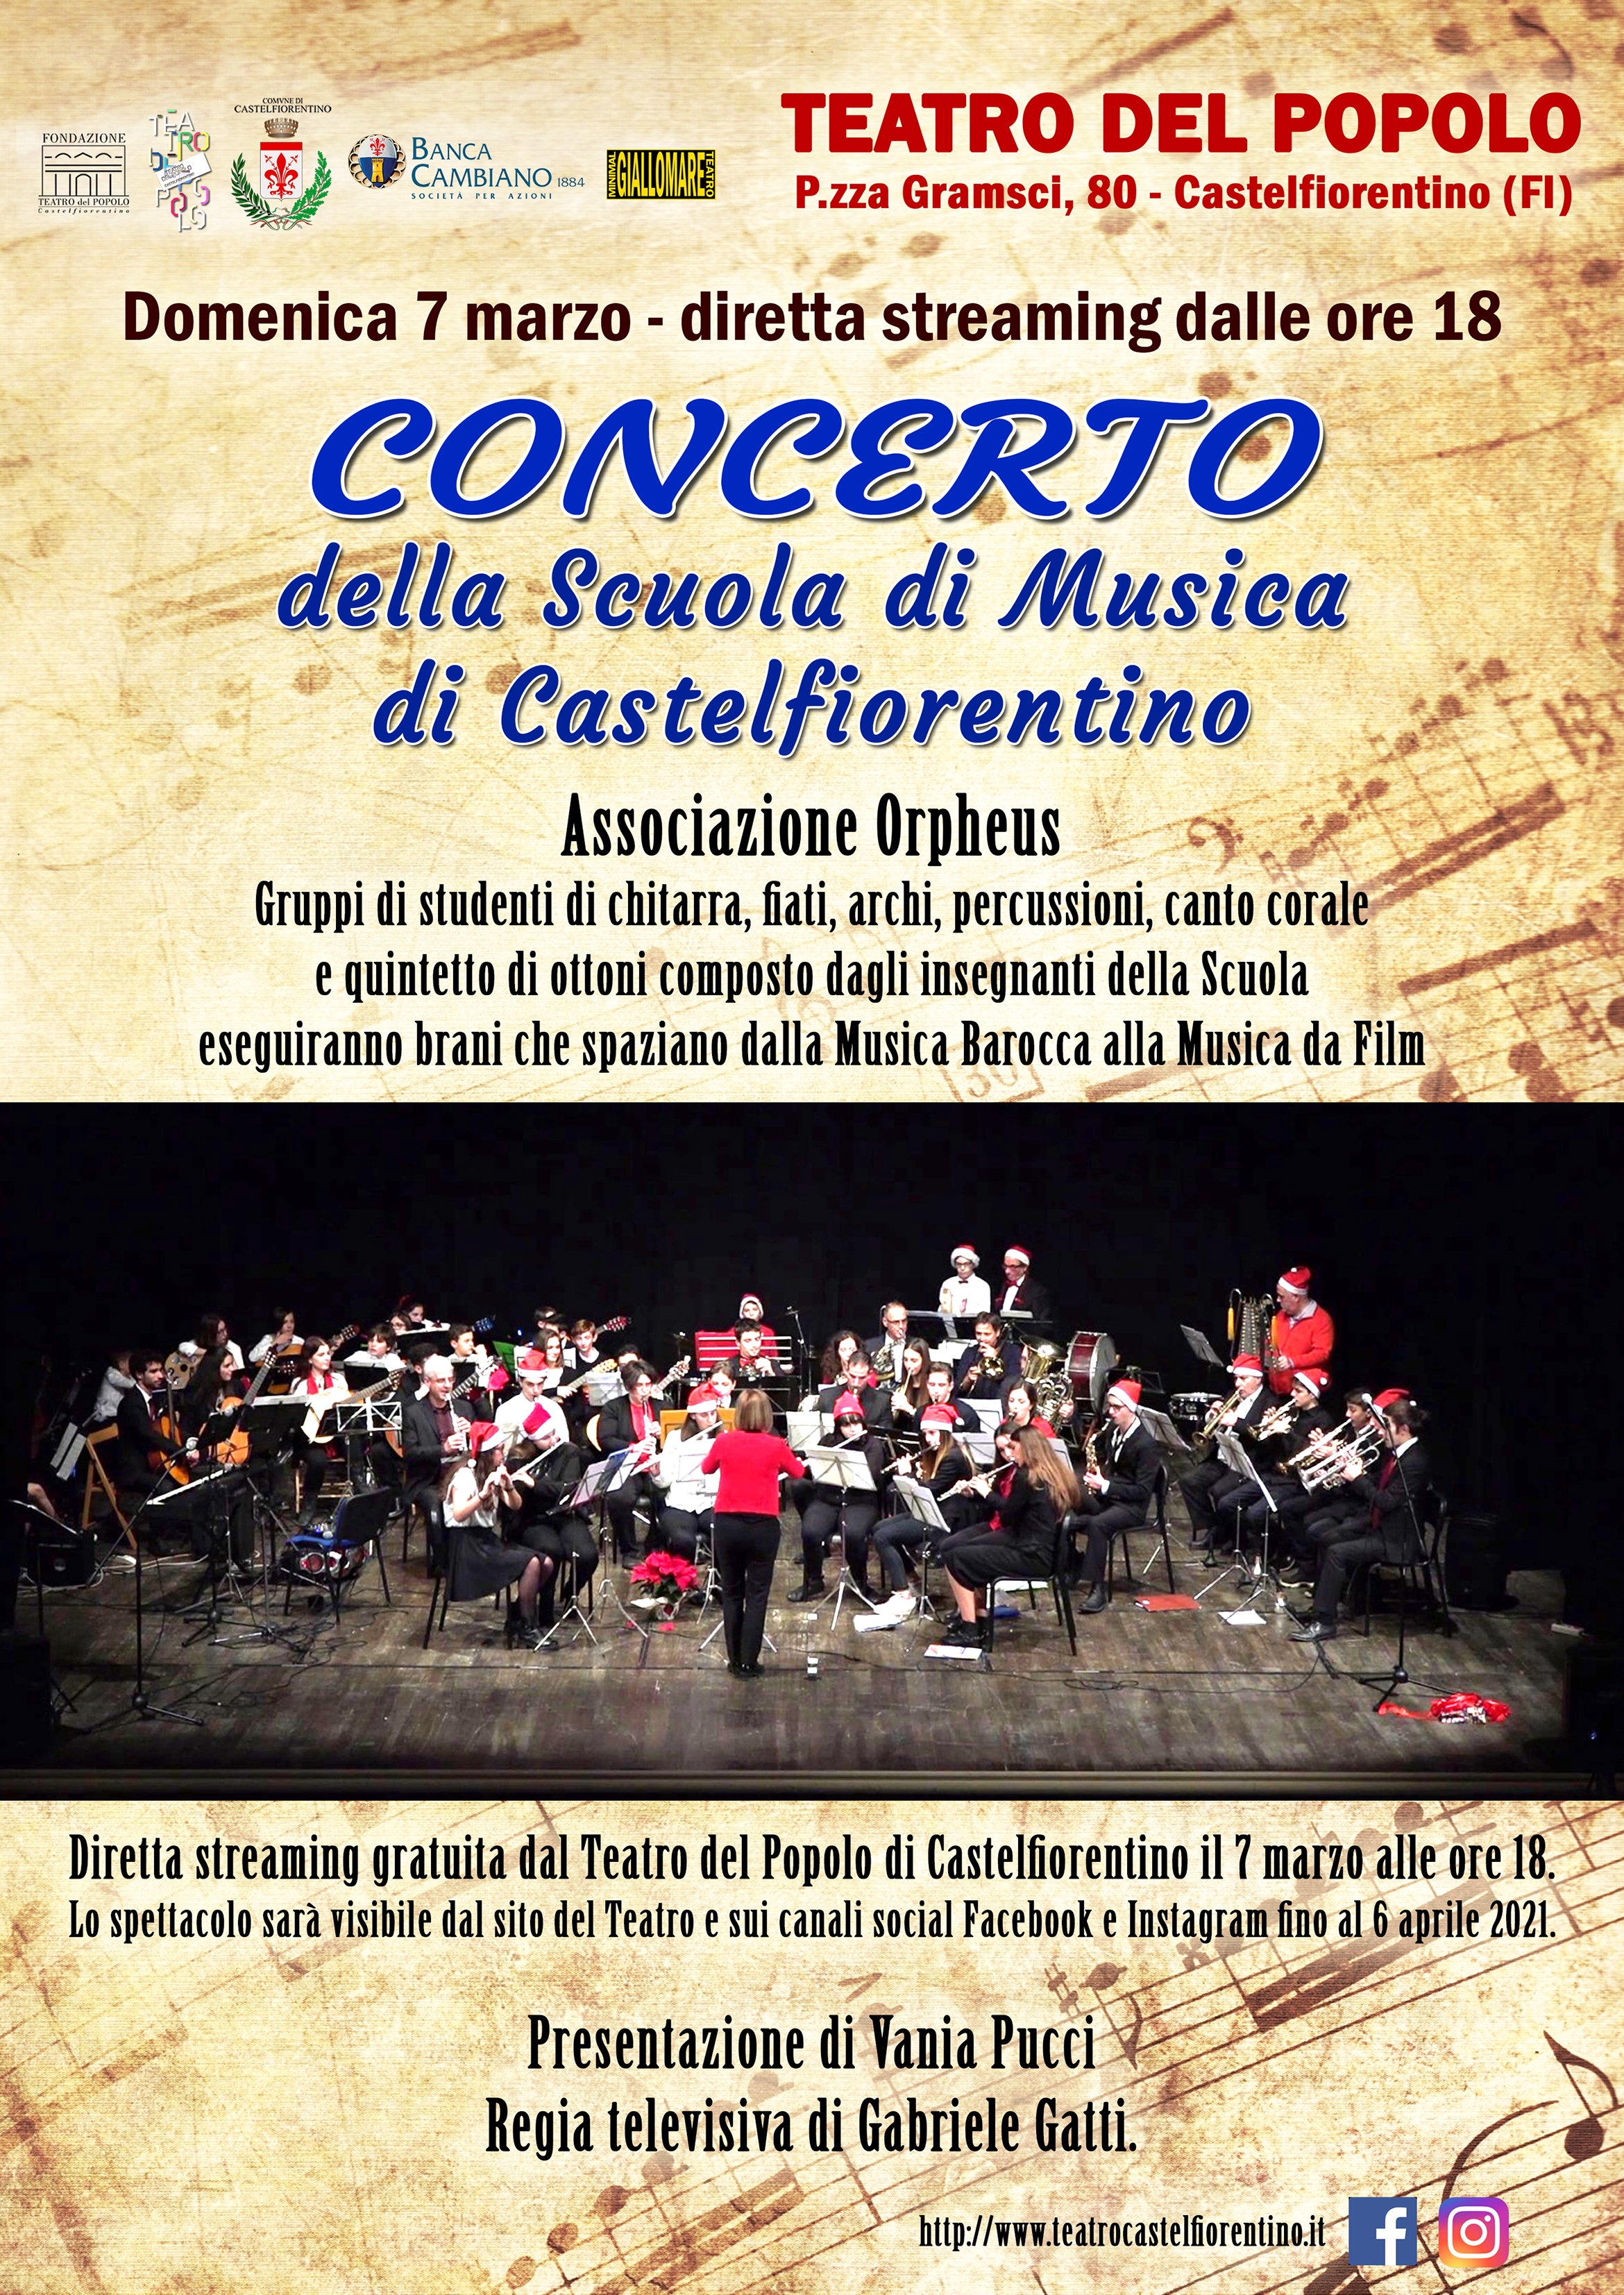 CONCERTO DELLA SCUOLA DI MUSICA DI CASTELFIORENTINO - LIVE STREAMING